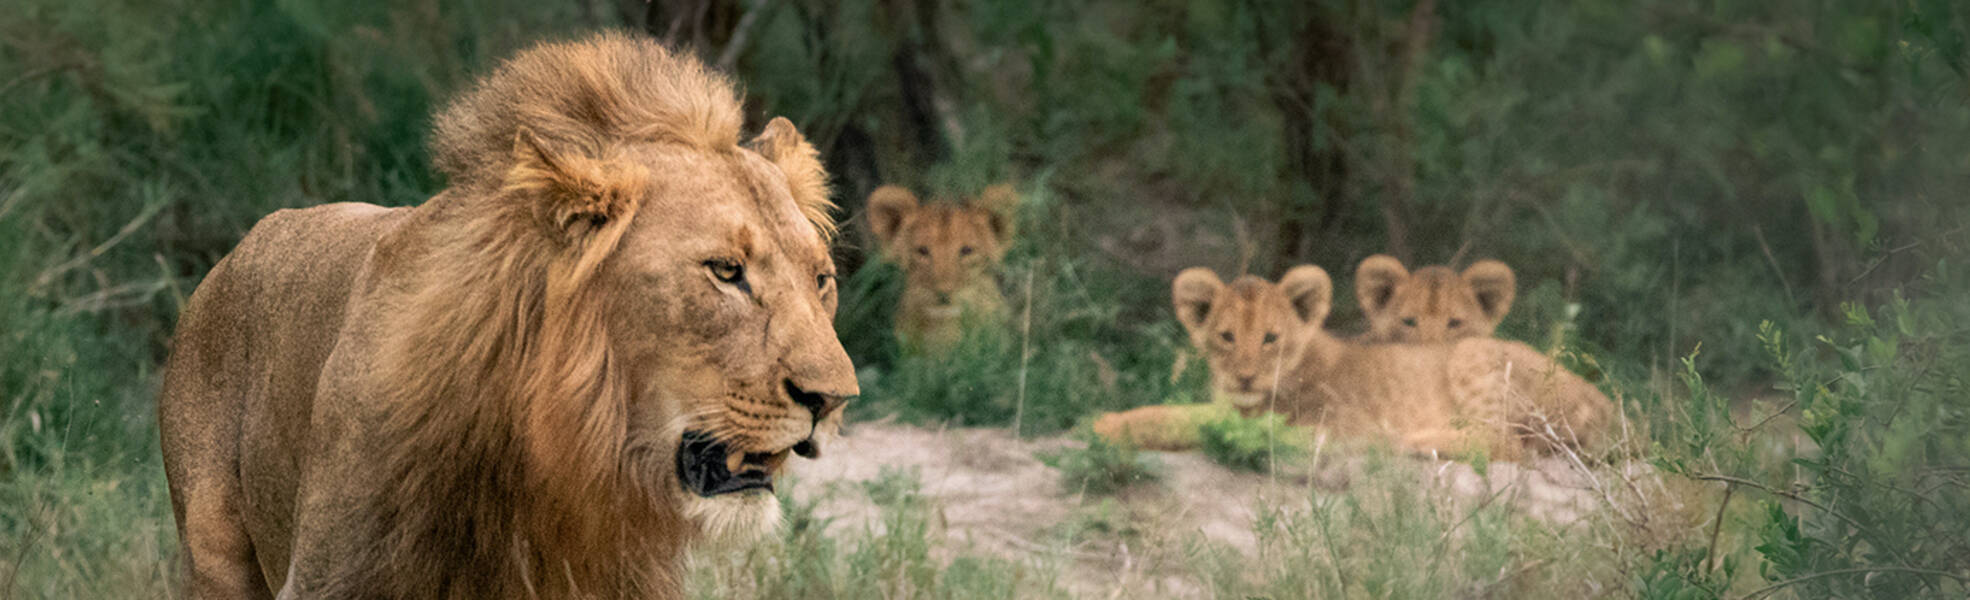 Volunteering in South Africa - Lion in Kruger National Park